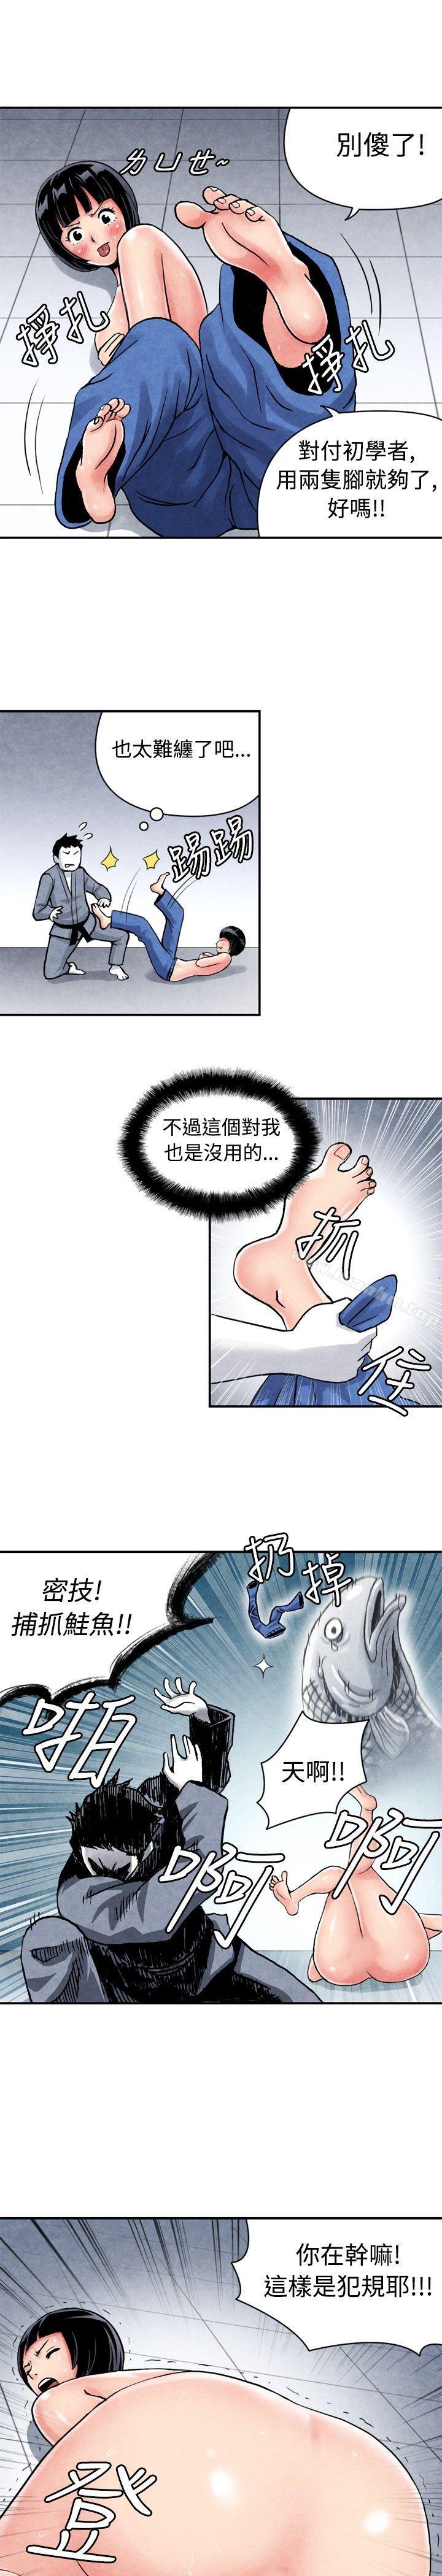 漫画韩国 生物學的女性攻略法   - 立即阅读 生物學的女性攻略法 CASE 05-1. 格鬥少女, 朝著弱點進攻吧第13漫画图片